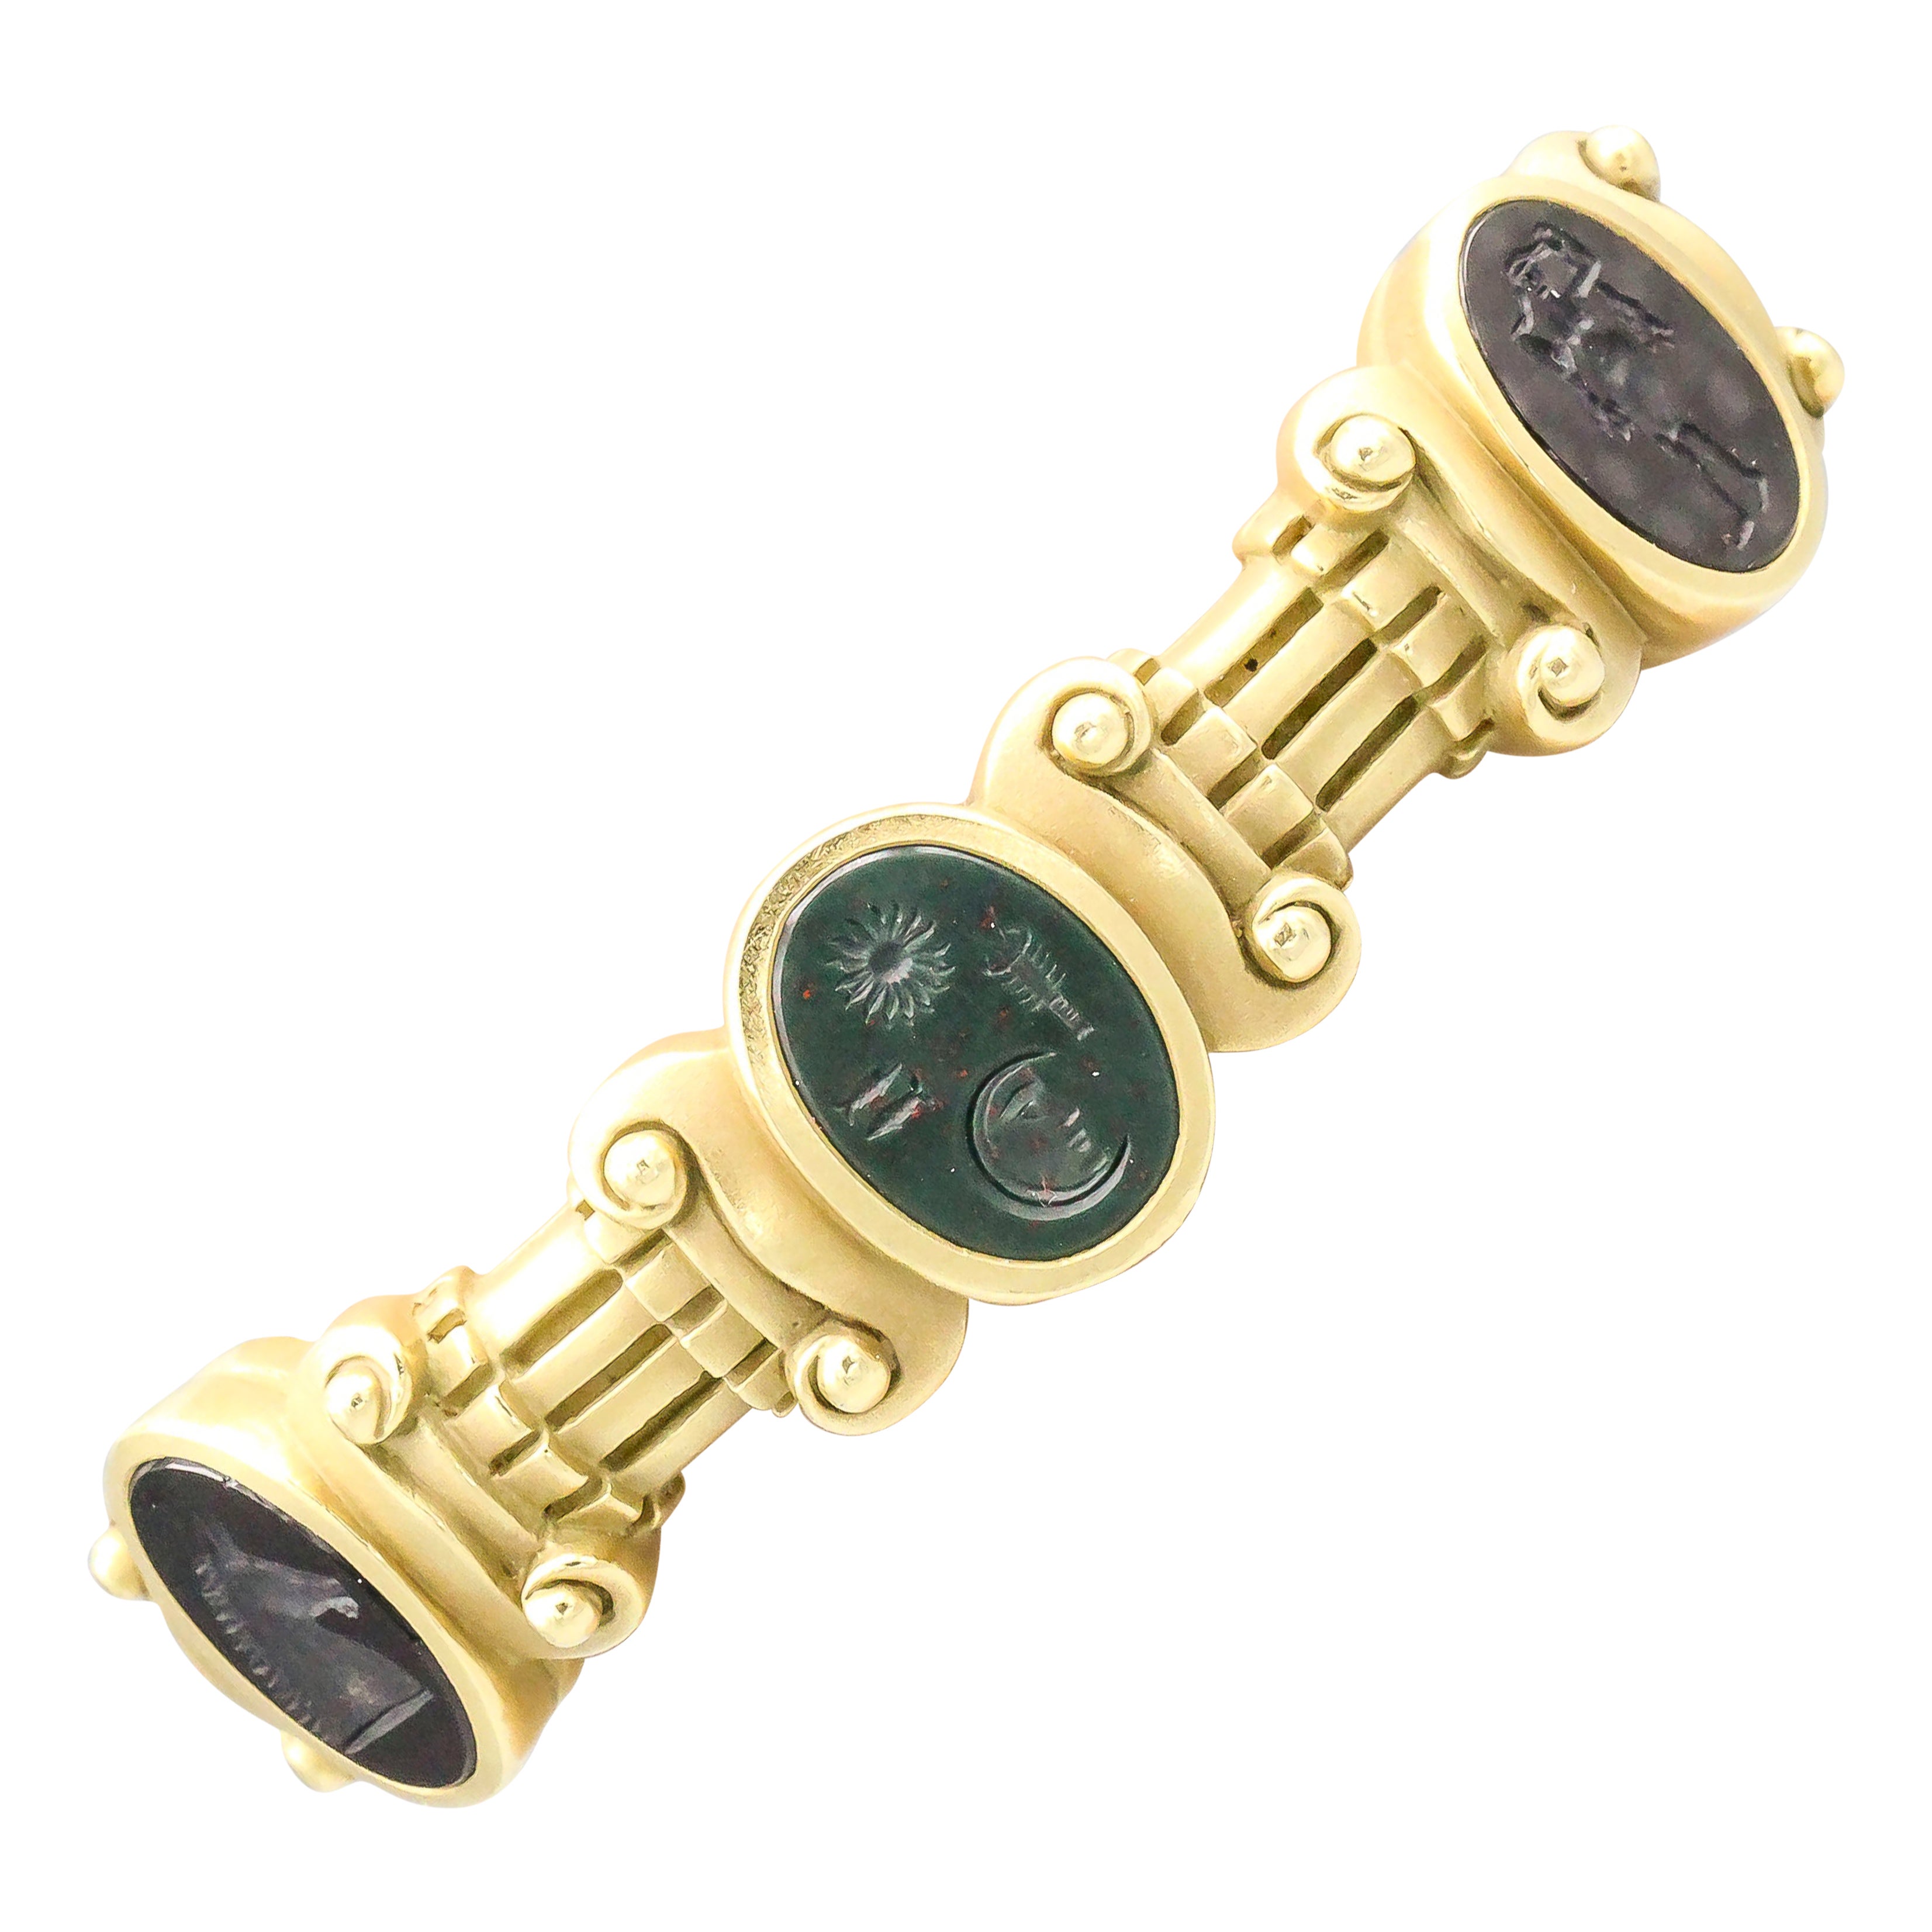 Kieselstein-Cord Intaglio and 18 Karat Gold Cuff Bracelet